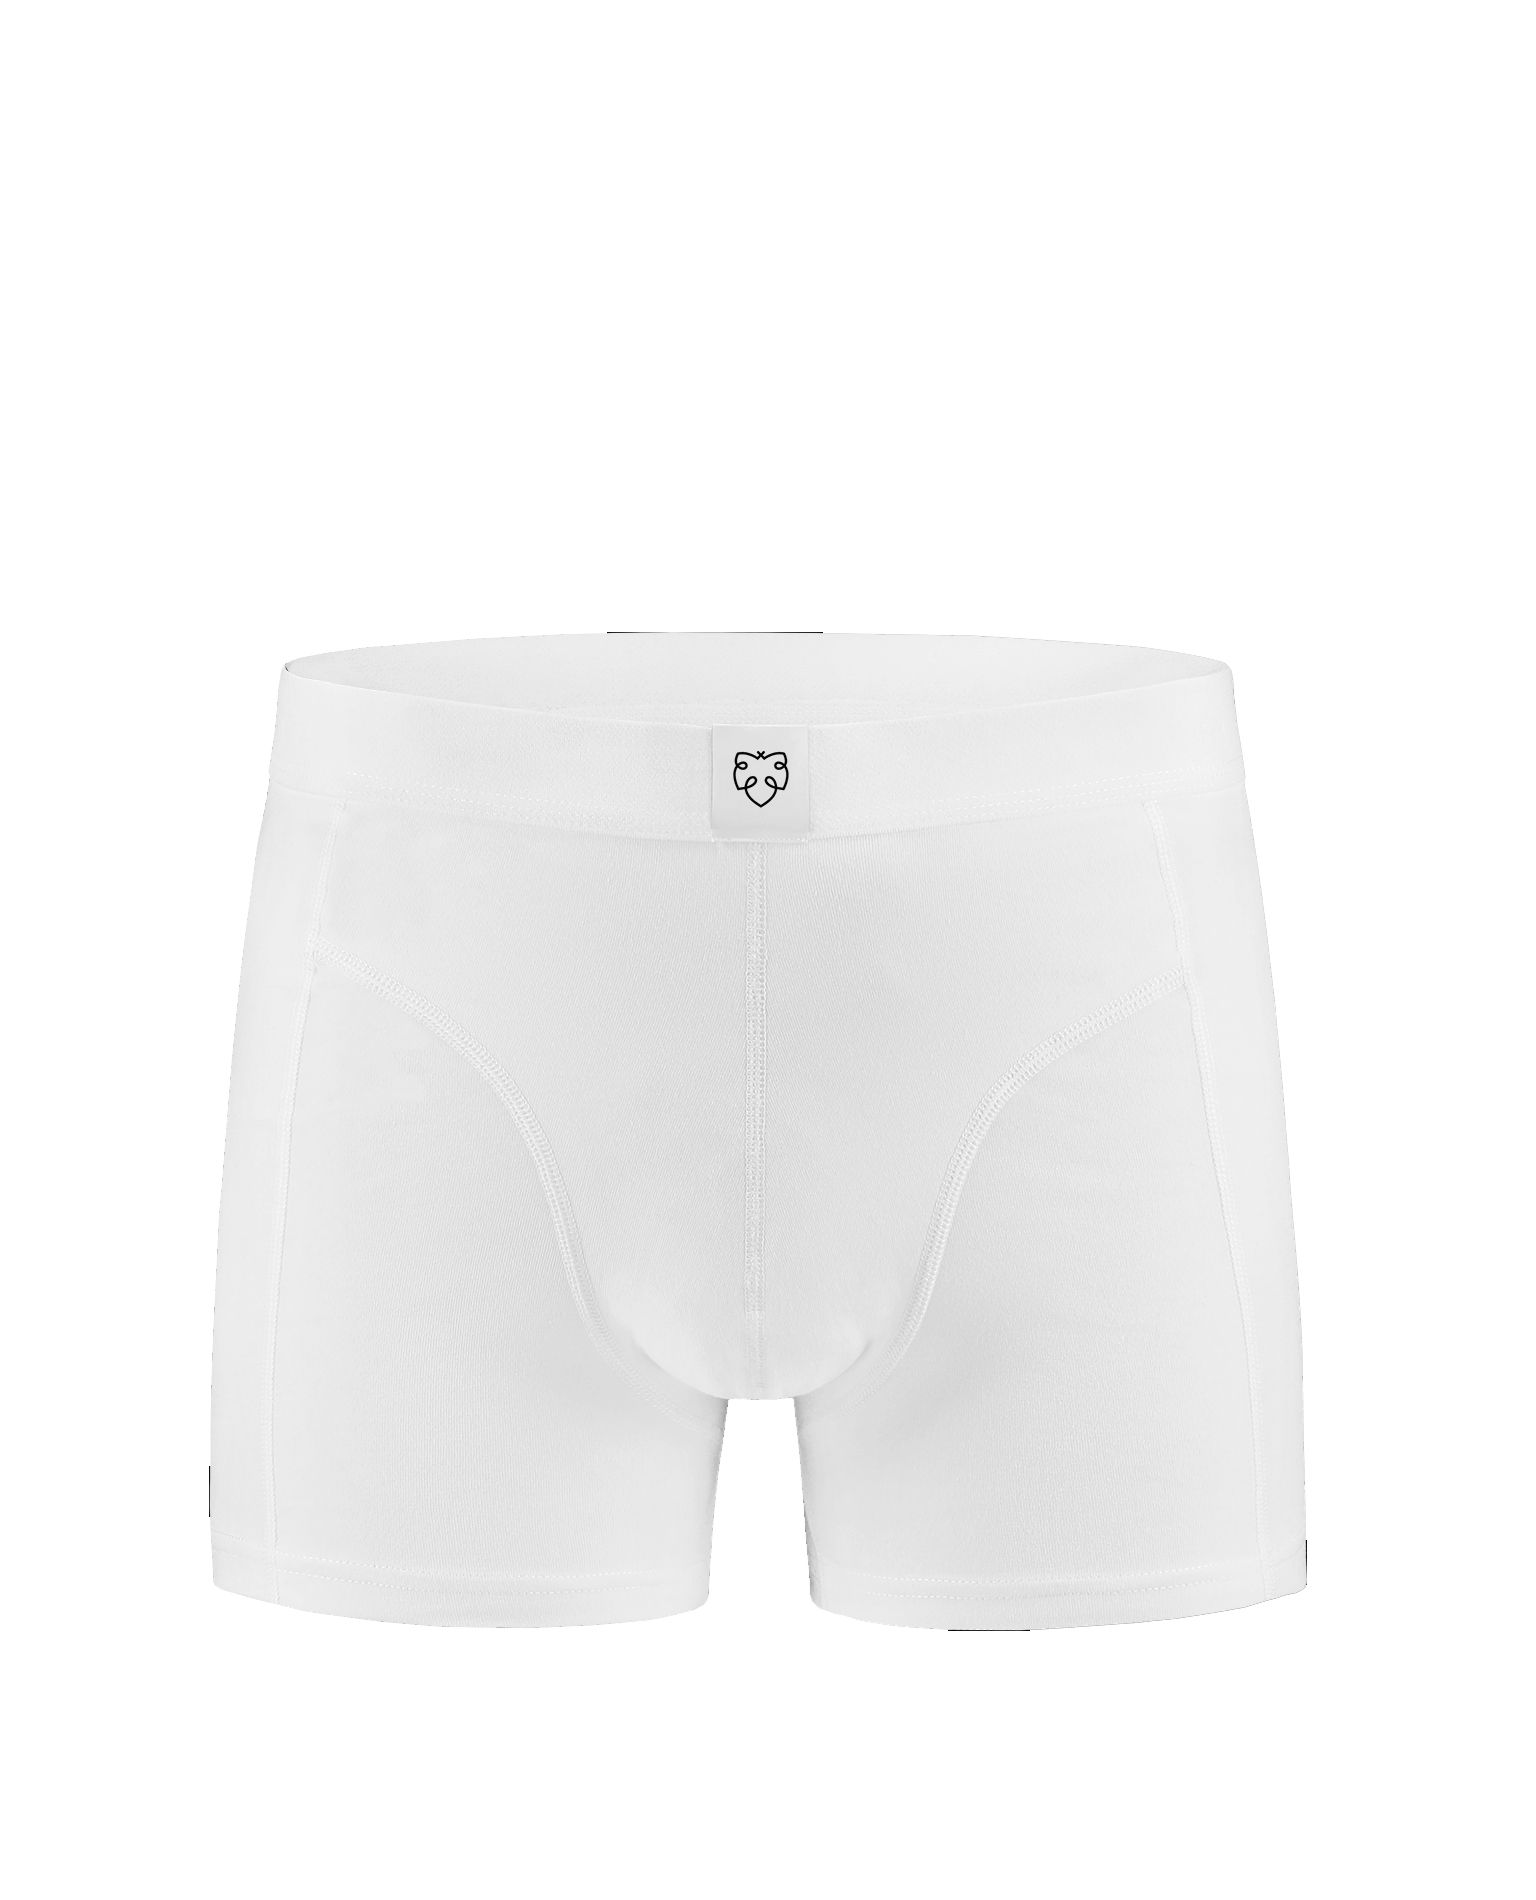 Okke White Underwear A-Dam - 1032 - Underwear - Jerone Group Oy